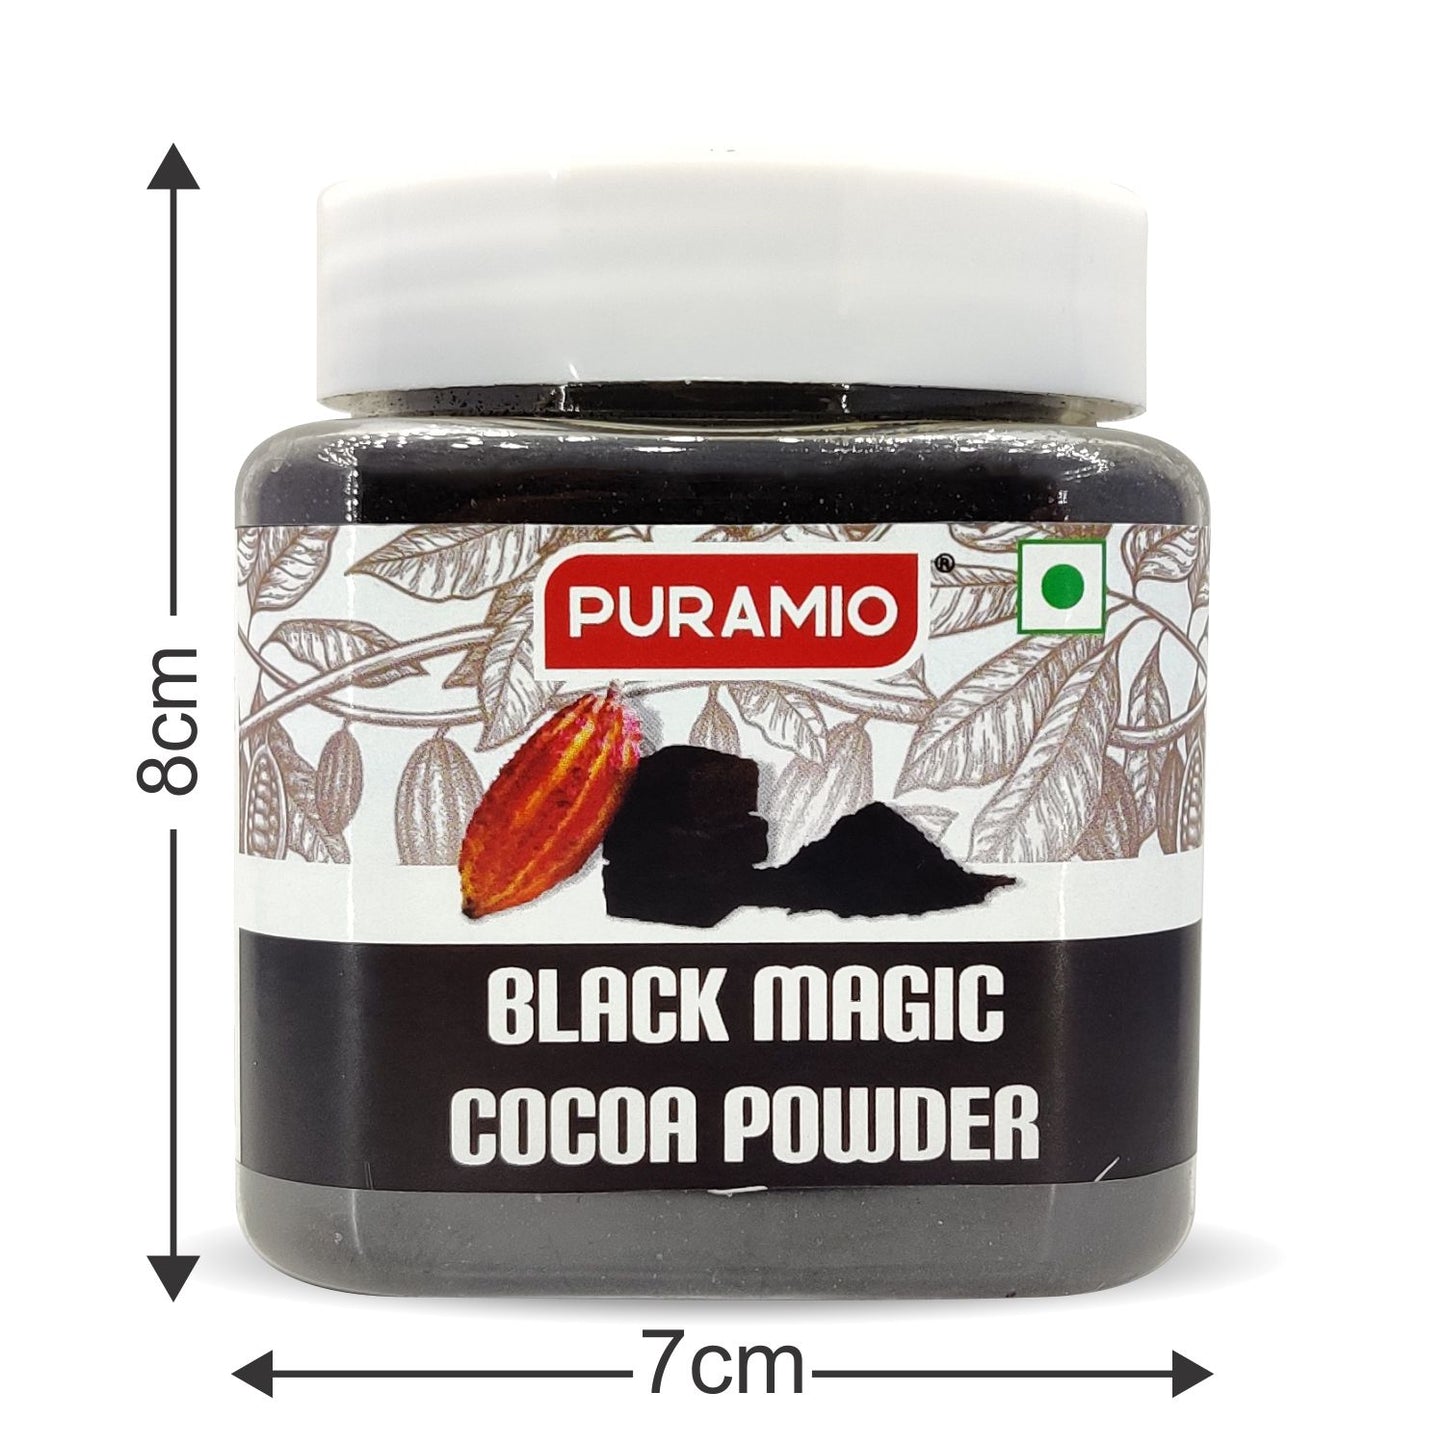 Puramio Black Magic Cocoa Powder